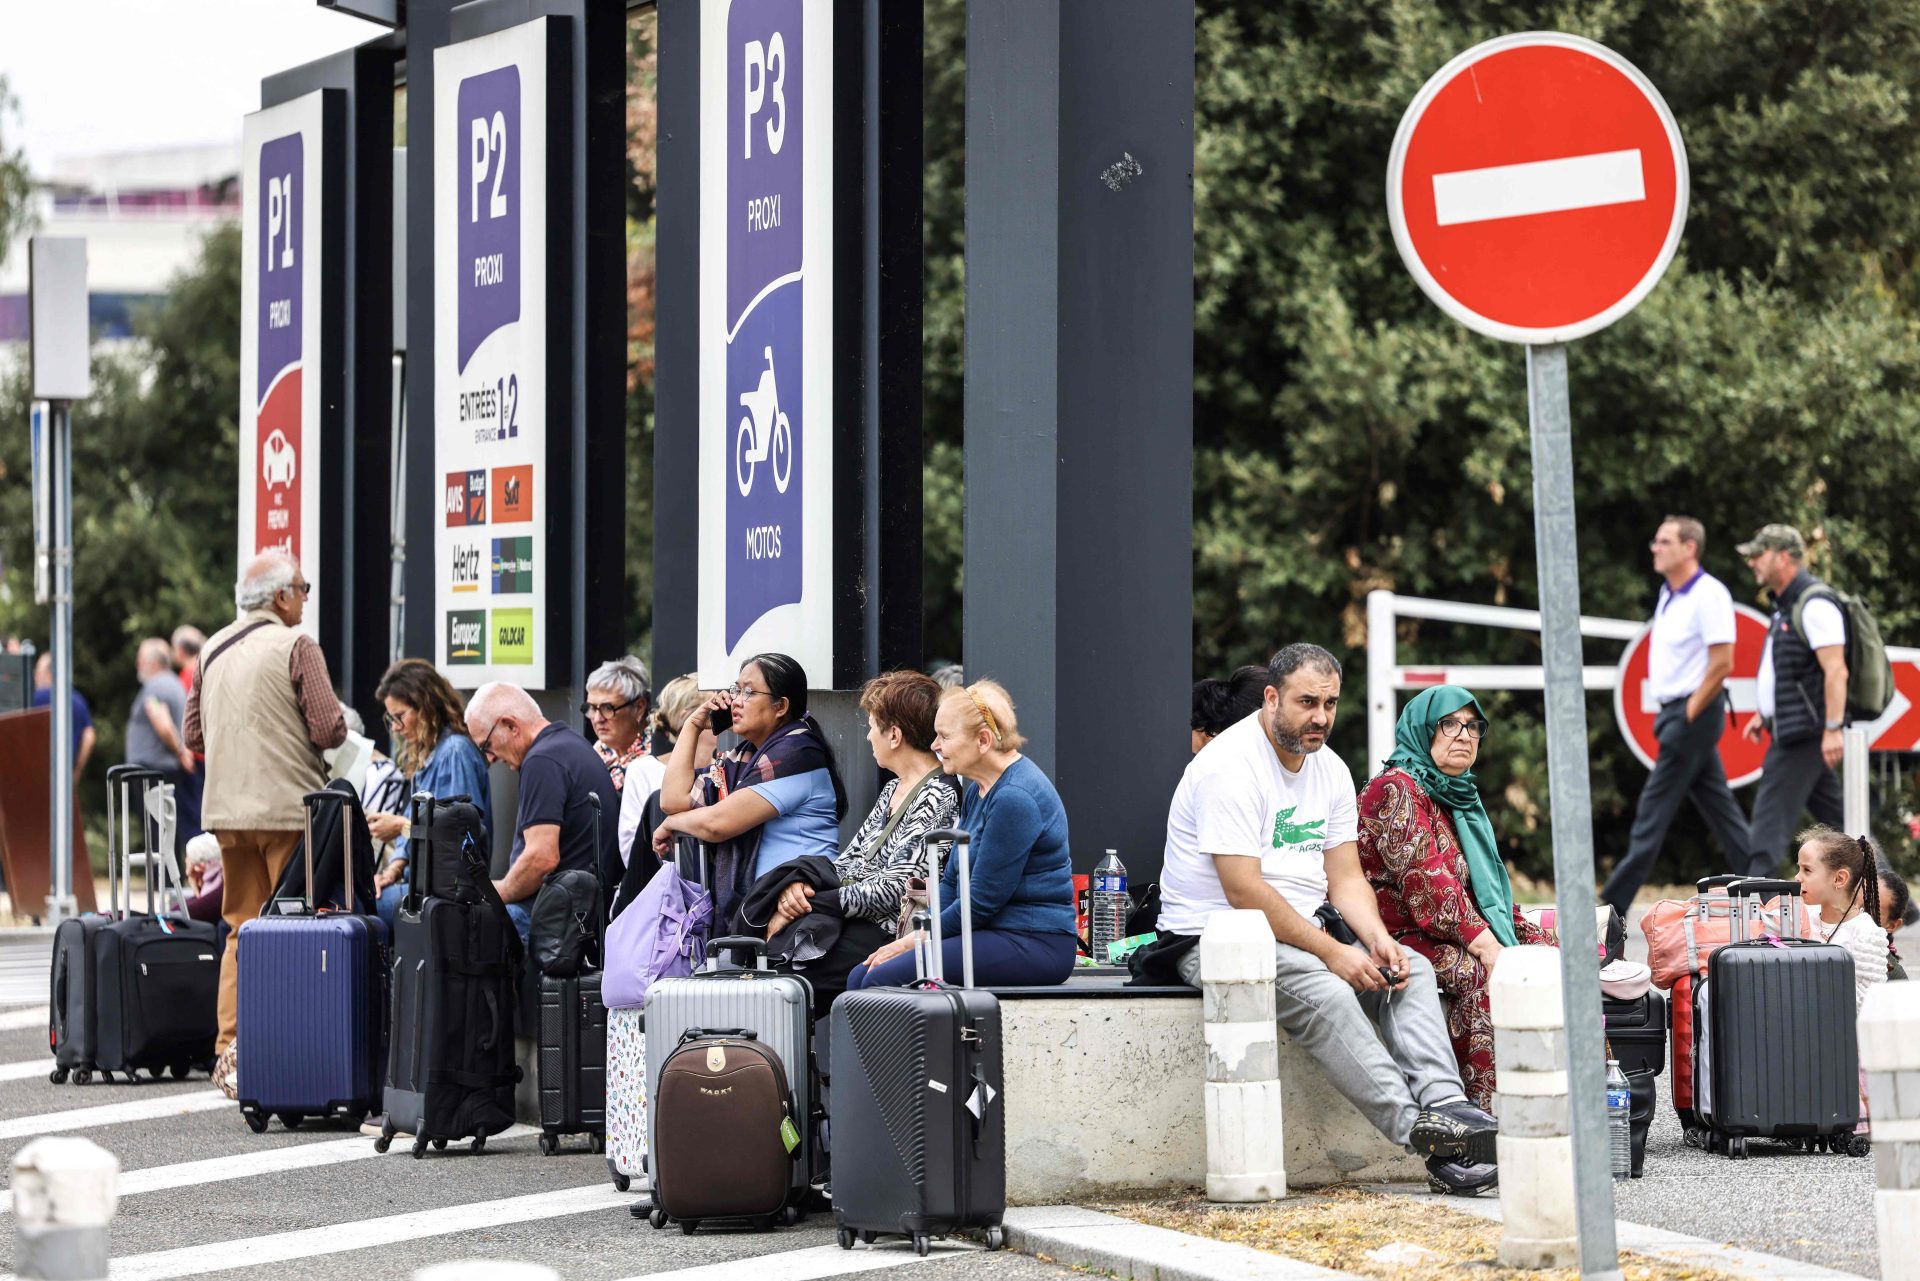 Seis aeroportos de França evacuados devido a ameaças de bomba